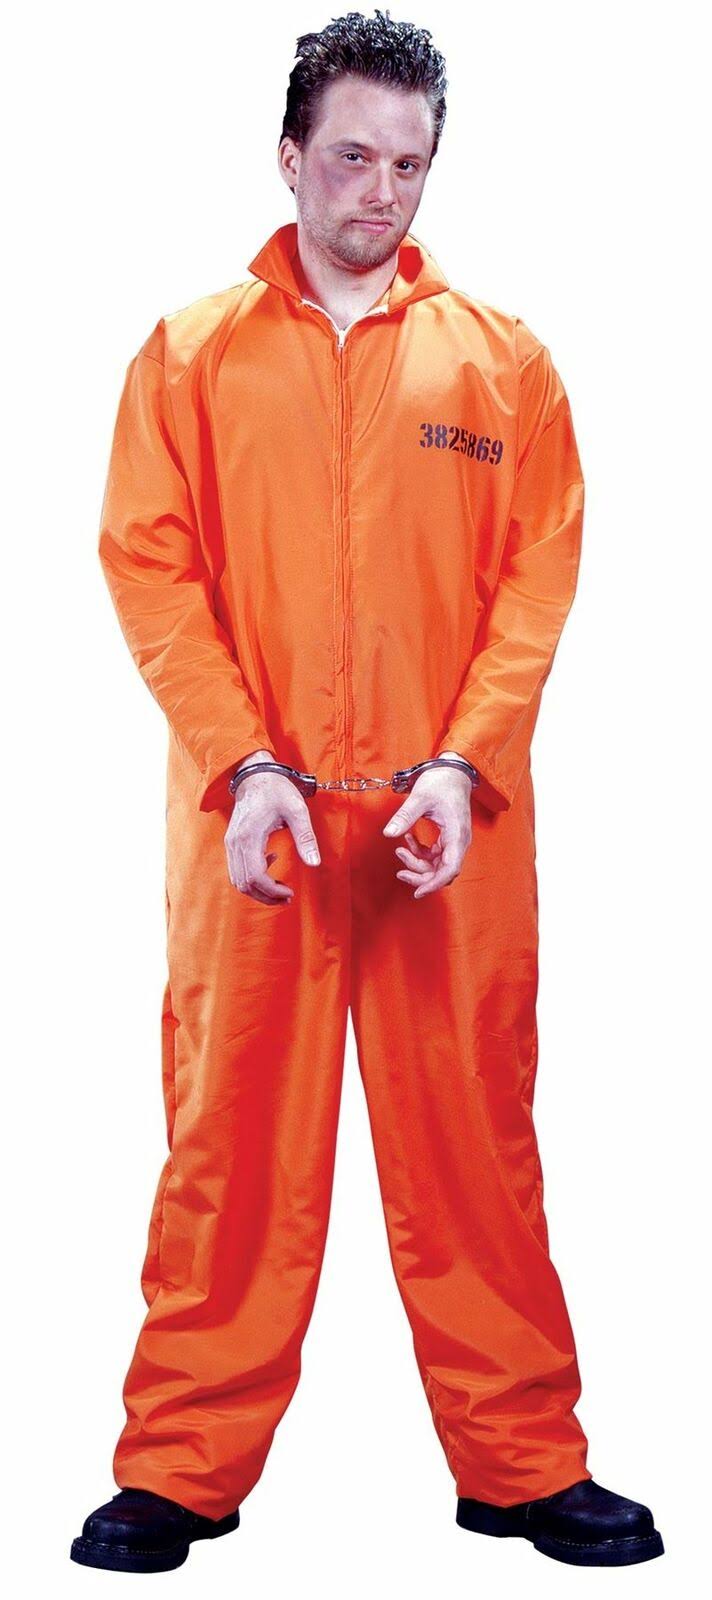 Got Busted Prisoner Costume